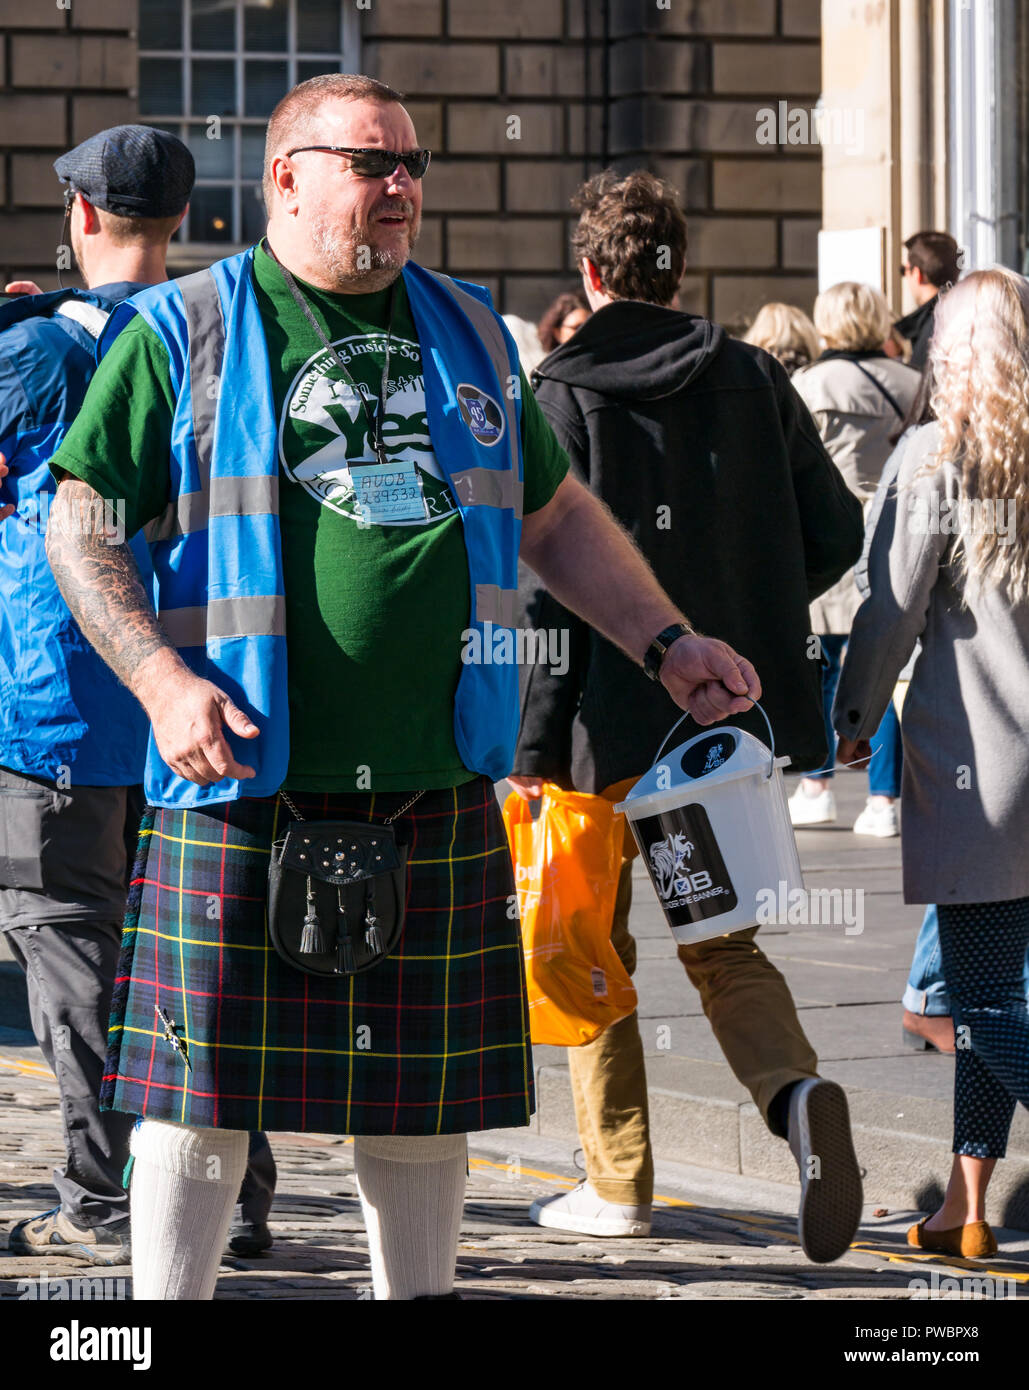 Mann im Kilt sammeln Spenden für Alle unter einem Banner schottische Unabhängigkeit AUOB März 2018, Royal Mile, Edinburgh, Schottland, Großbritannien Stockfoto